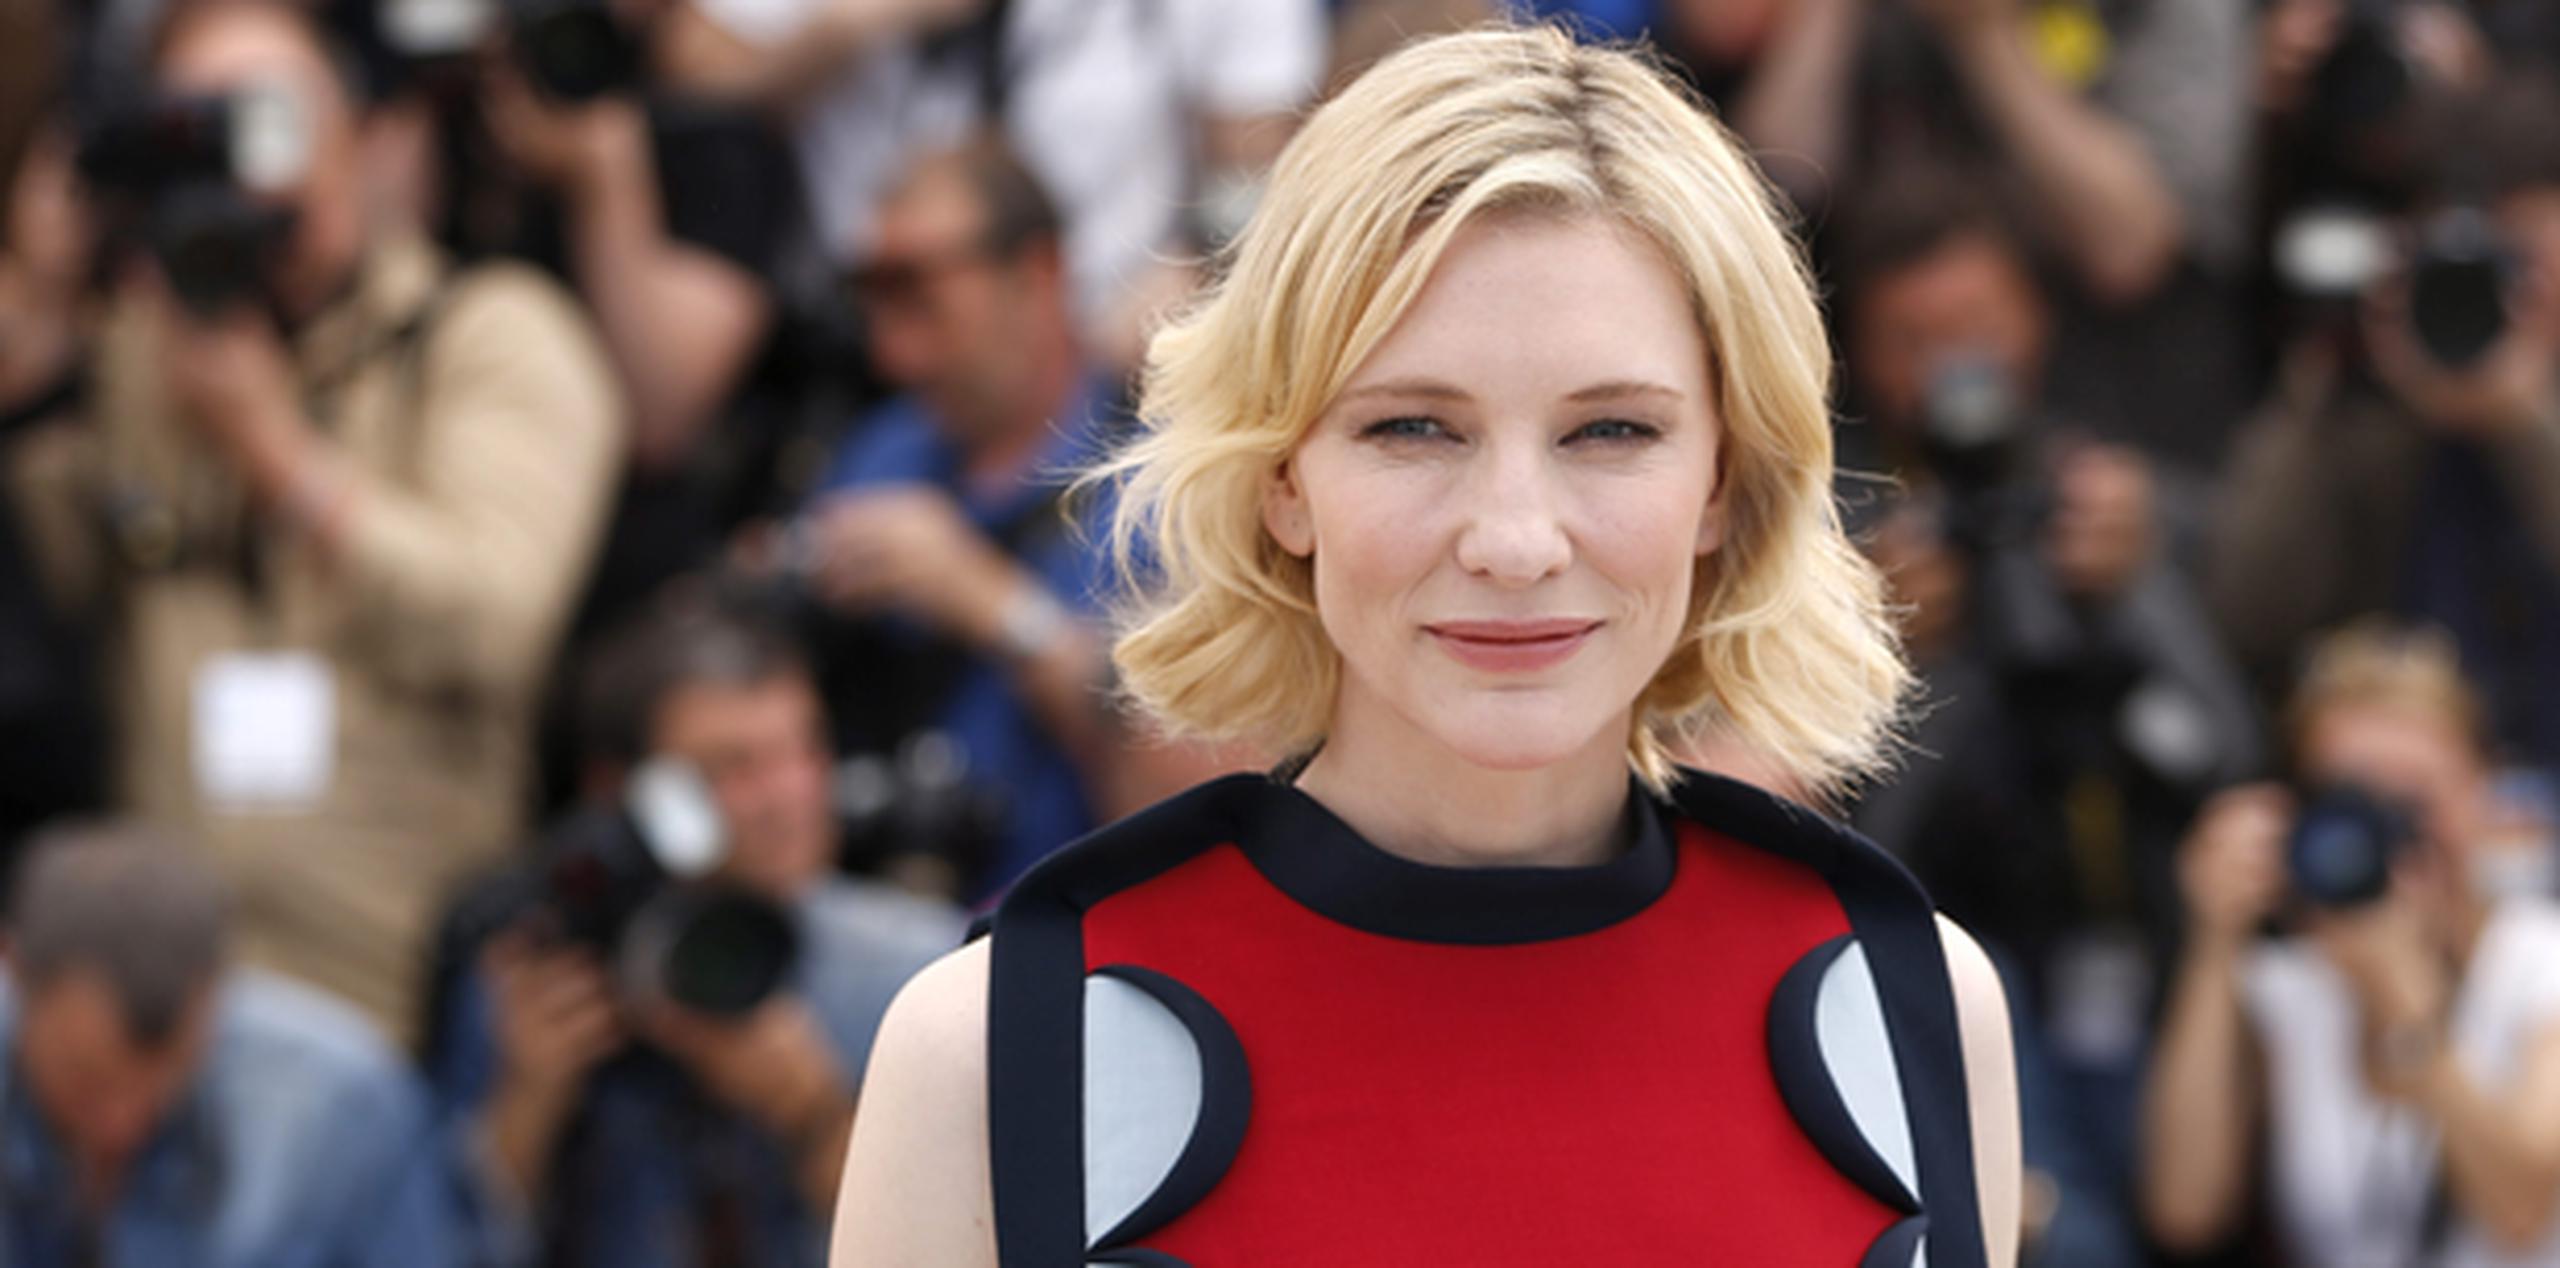 La actriz australiana Cate Blanchett posa a su llegada a la presentación de la película "How to Train Your Dragon 2" en la 67 edición del Festial de Cine de Cannes. (EFE)